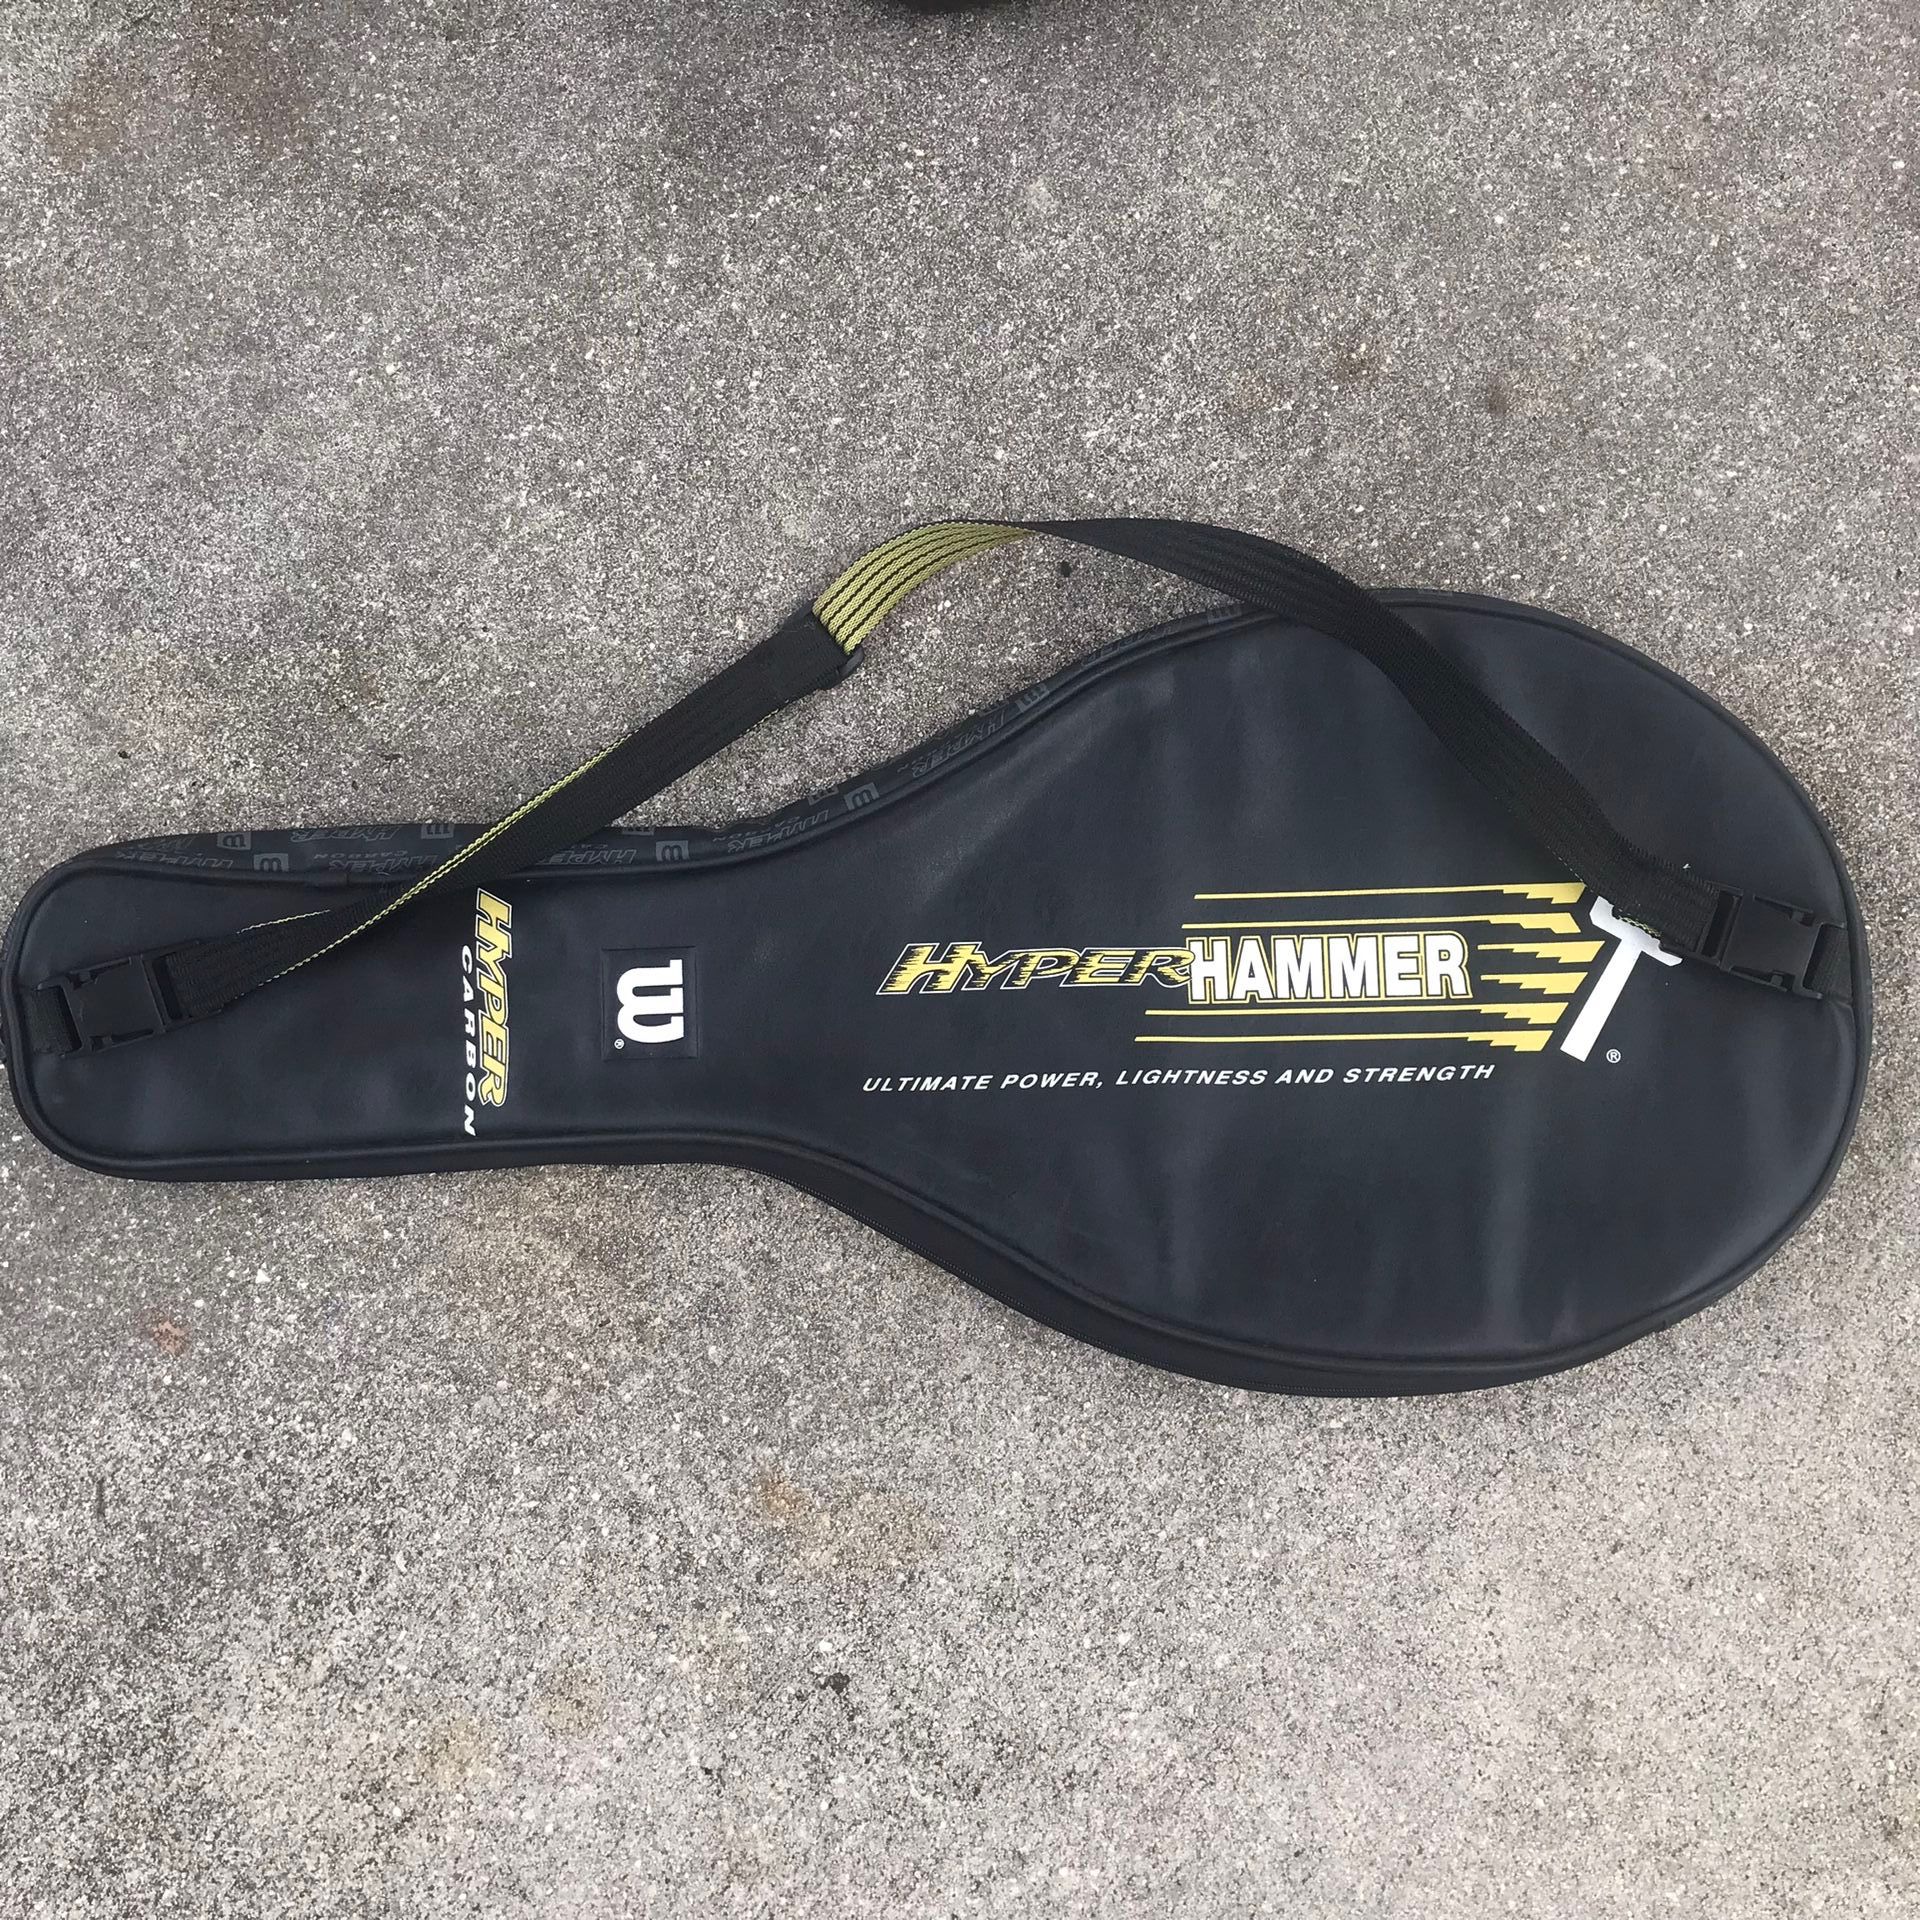 Wilson hyper hammer  tennis racket black cover case bag